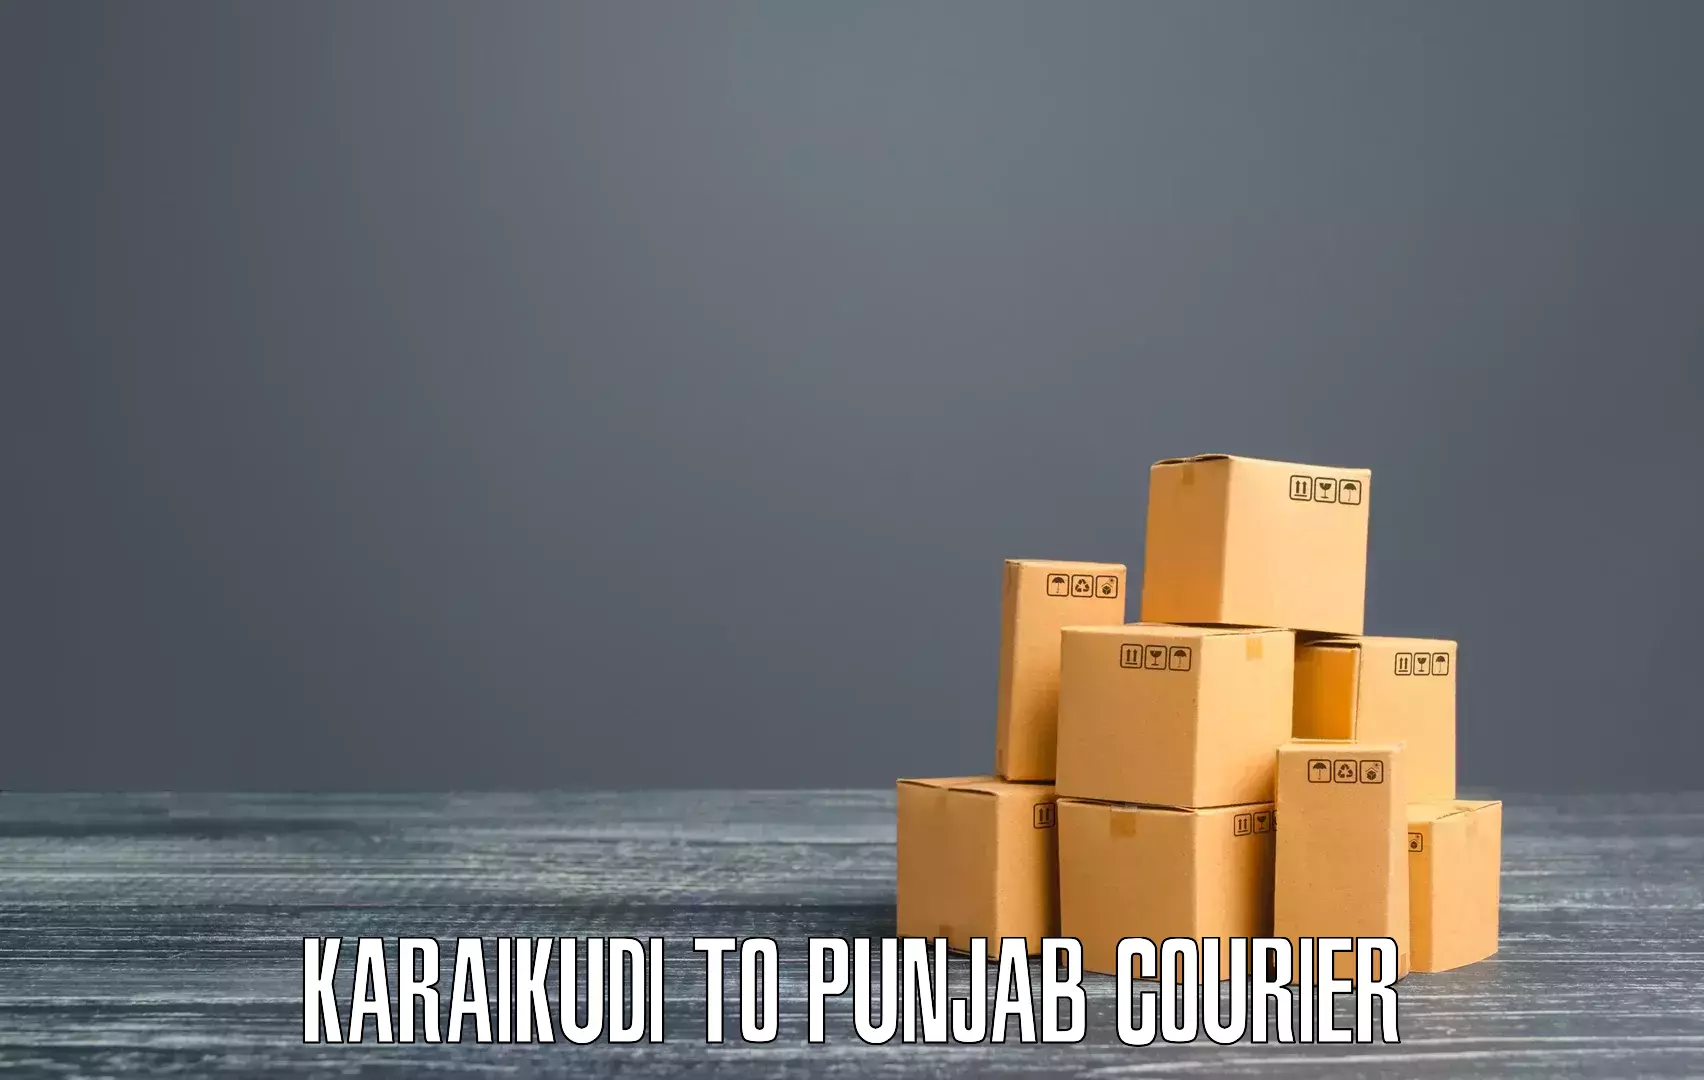 On-demand shipping options Karaikudi to Punjab